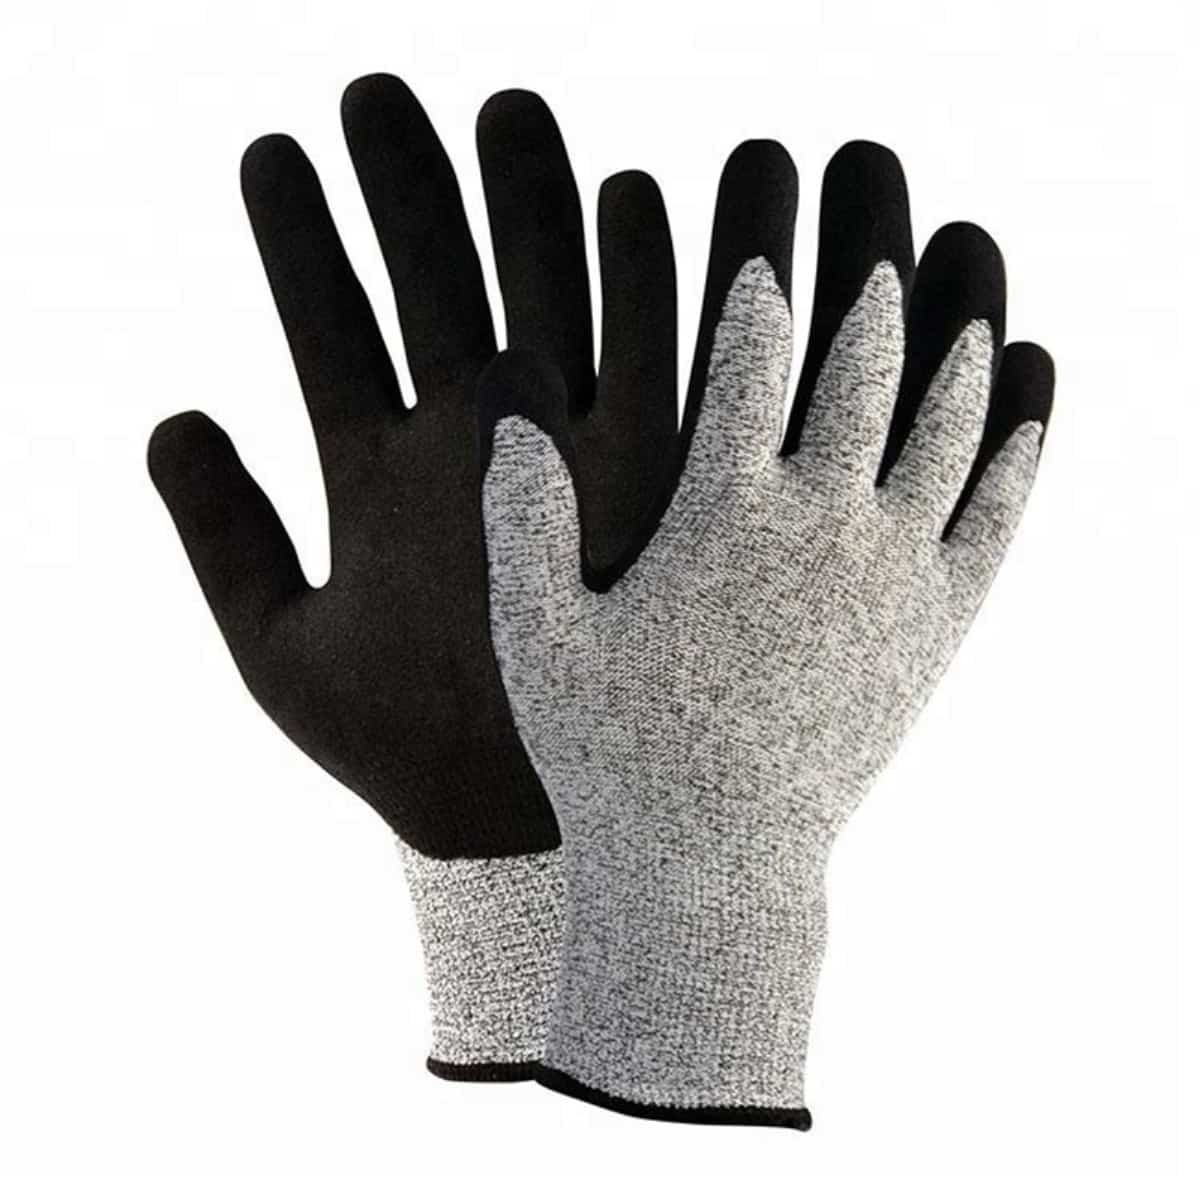 13g HPPE 工業用耐切創手袋、砂質ニトリルコーティング手のひら